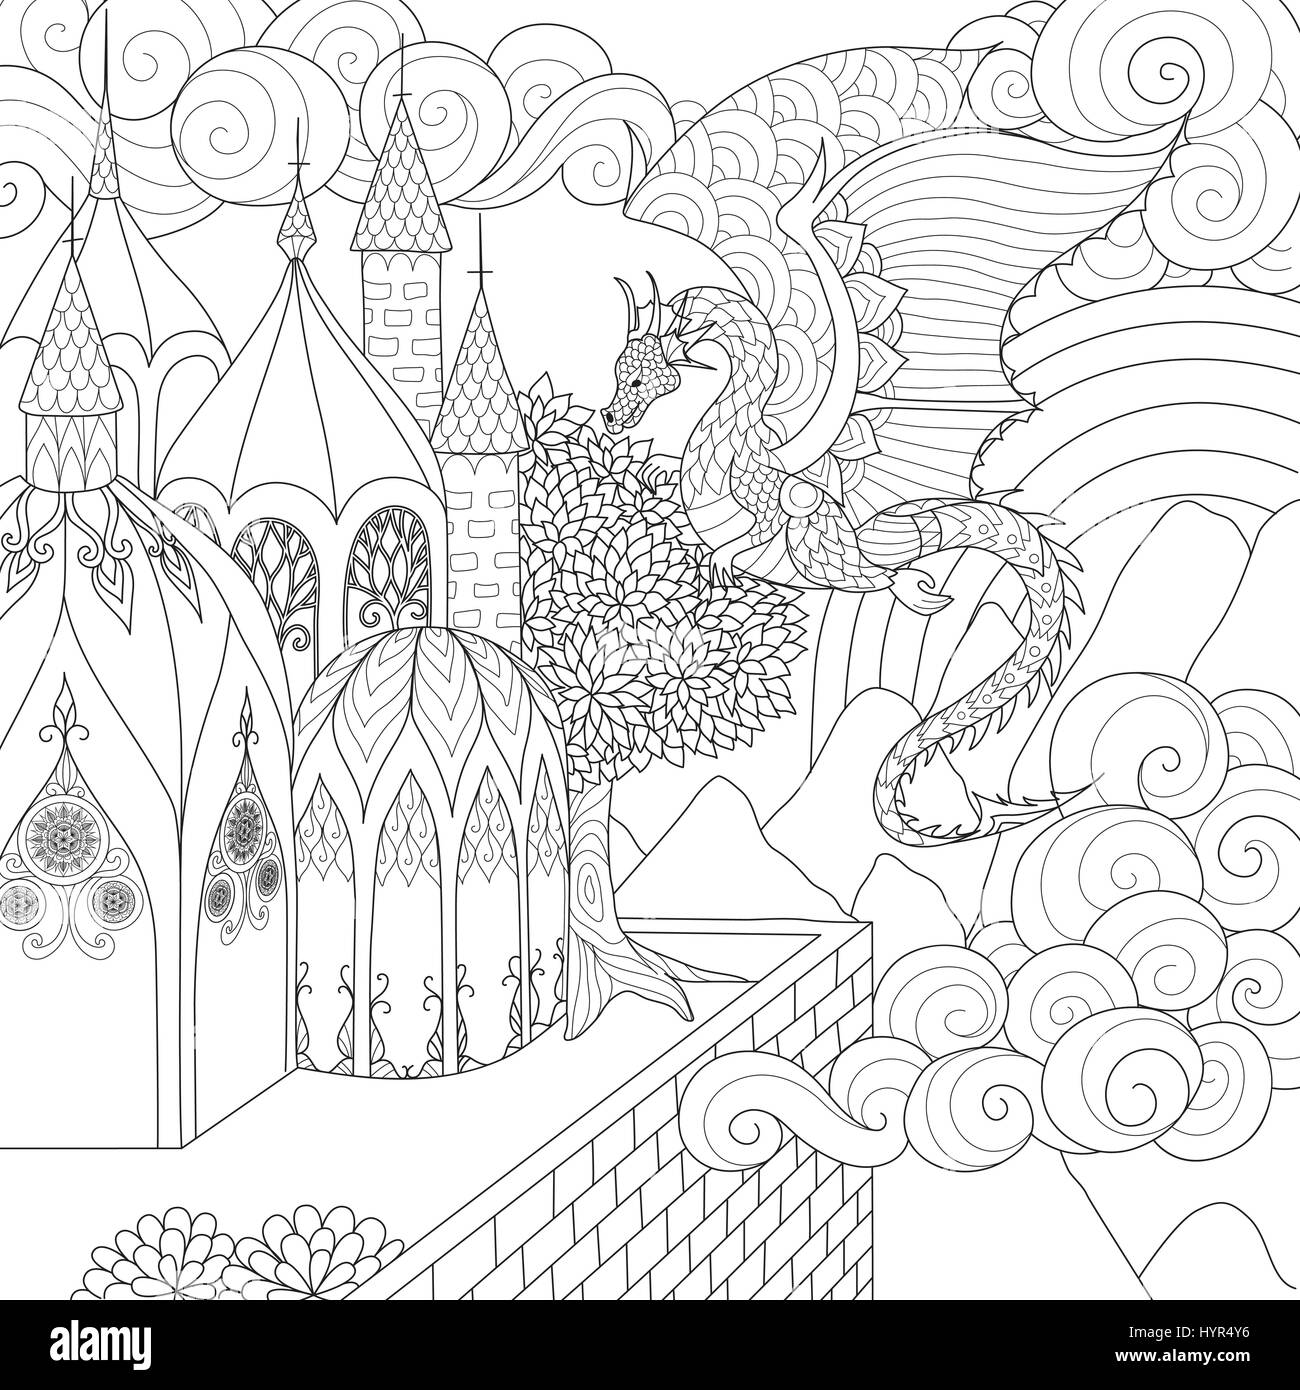 Drachen fliegen über wunderschöne Kathedrale für Erwachsenen Buch Malvorlagen. Vektor-illustration Stock Vektor